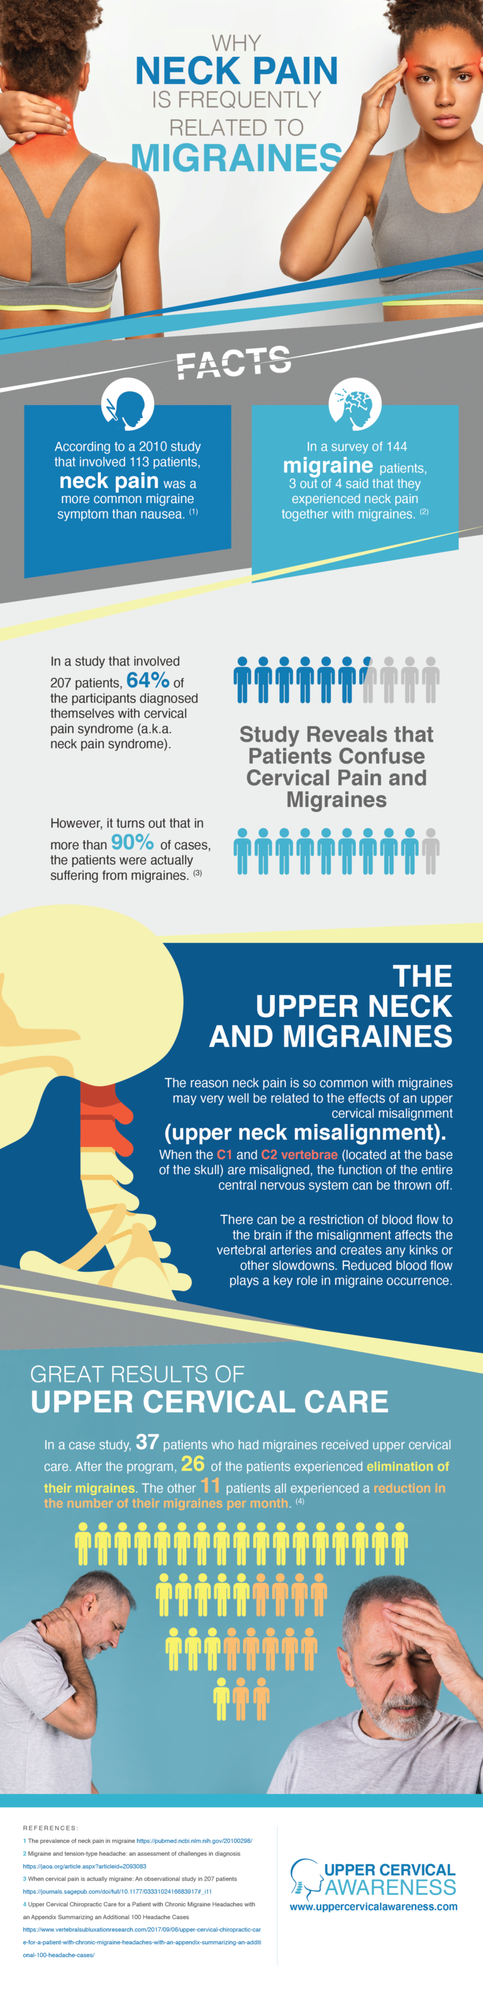 Upper Cervical Chiropractor in Wapakoneta, migraine relief infographic